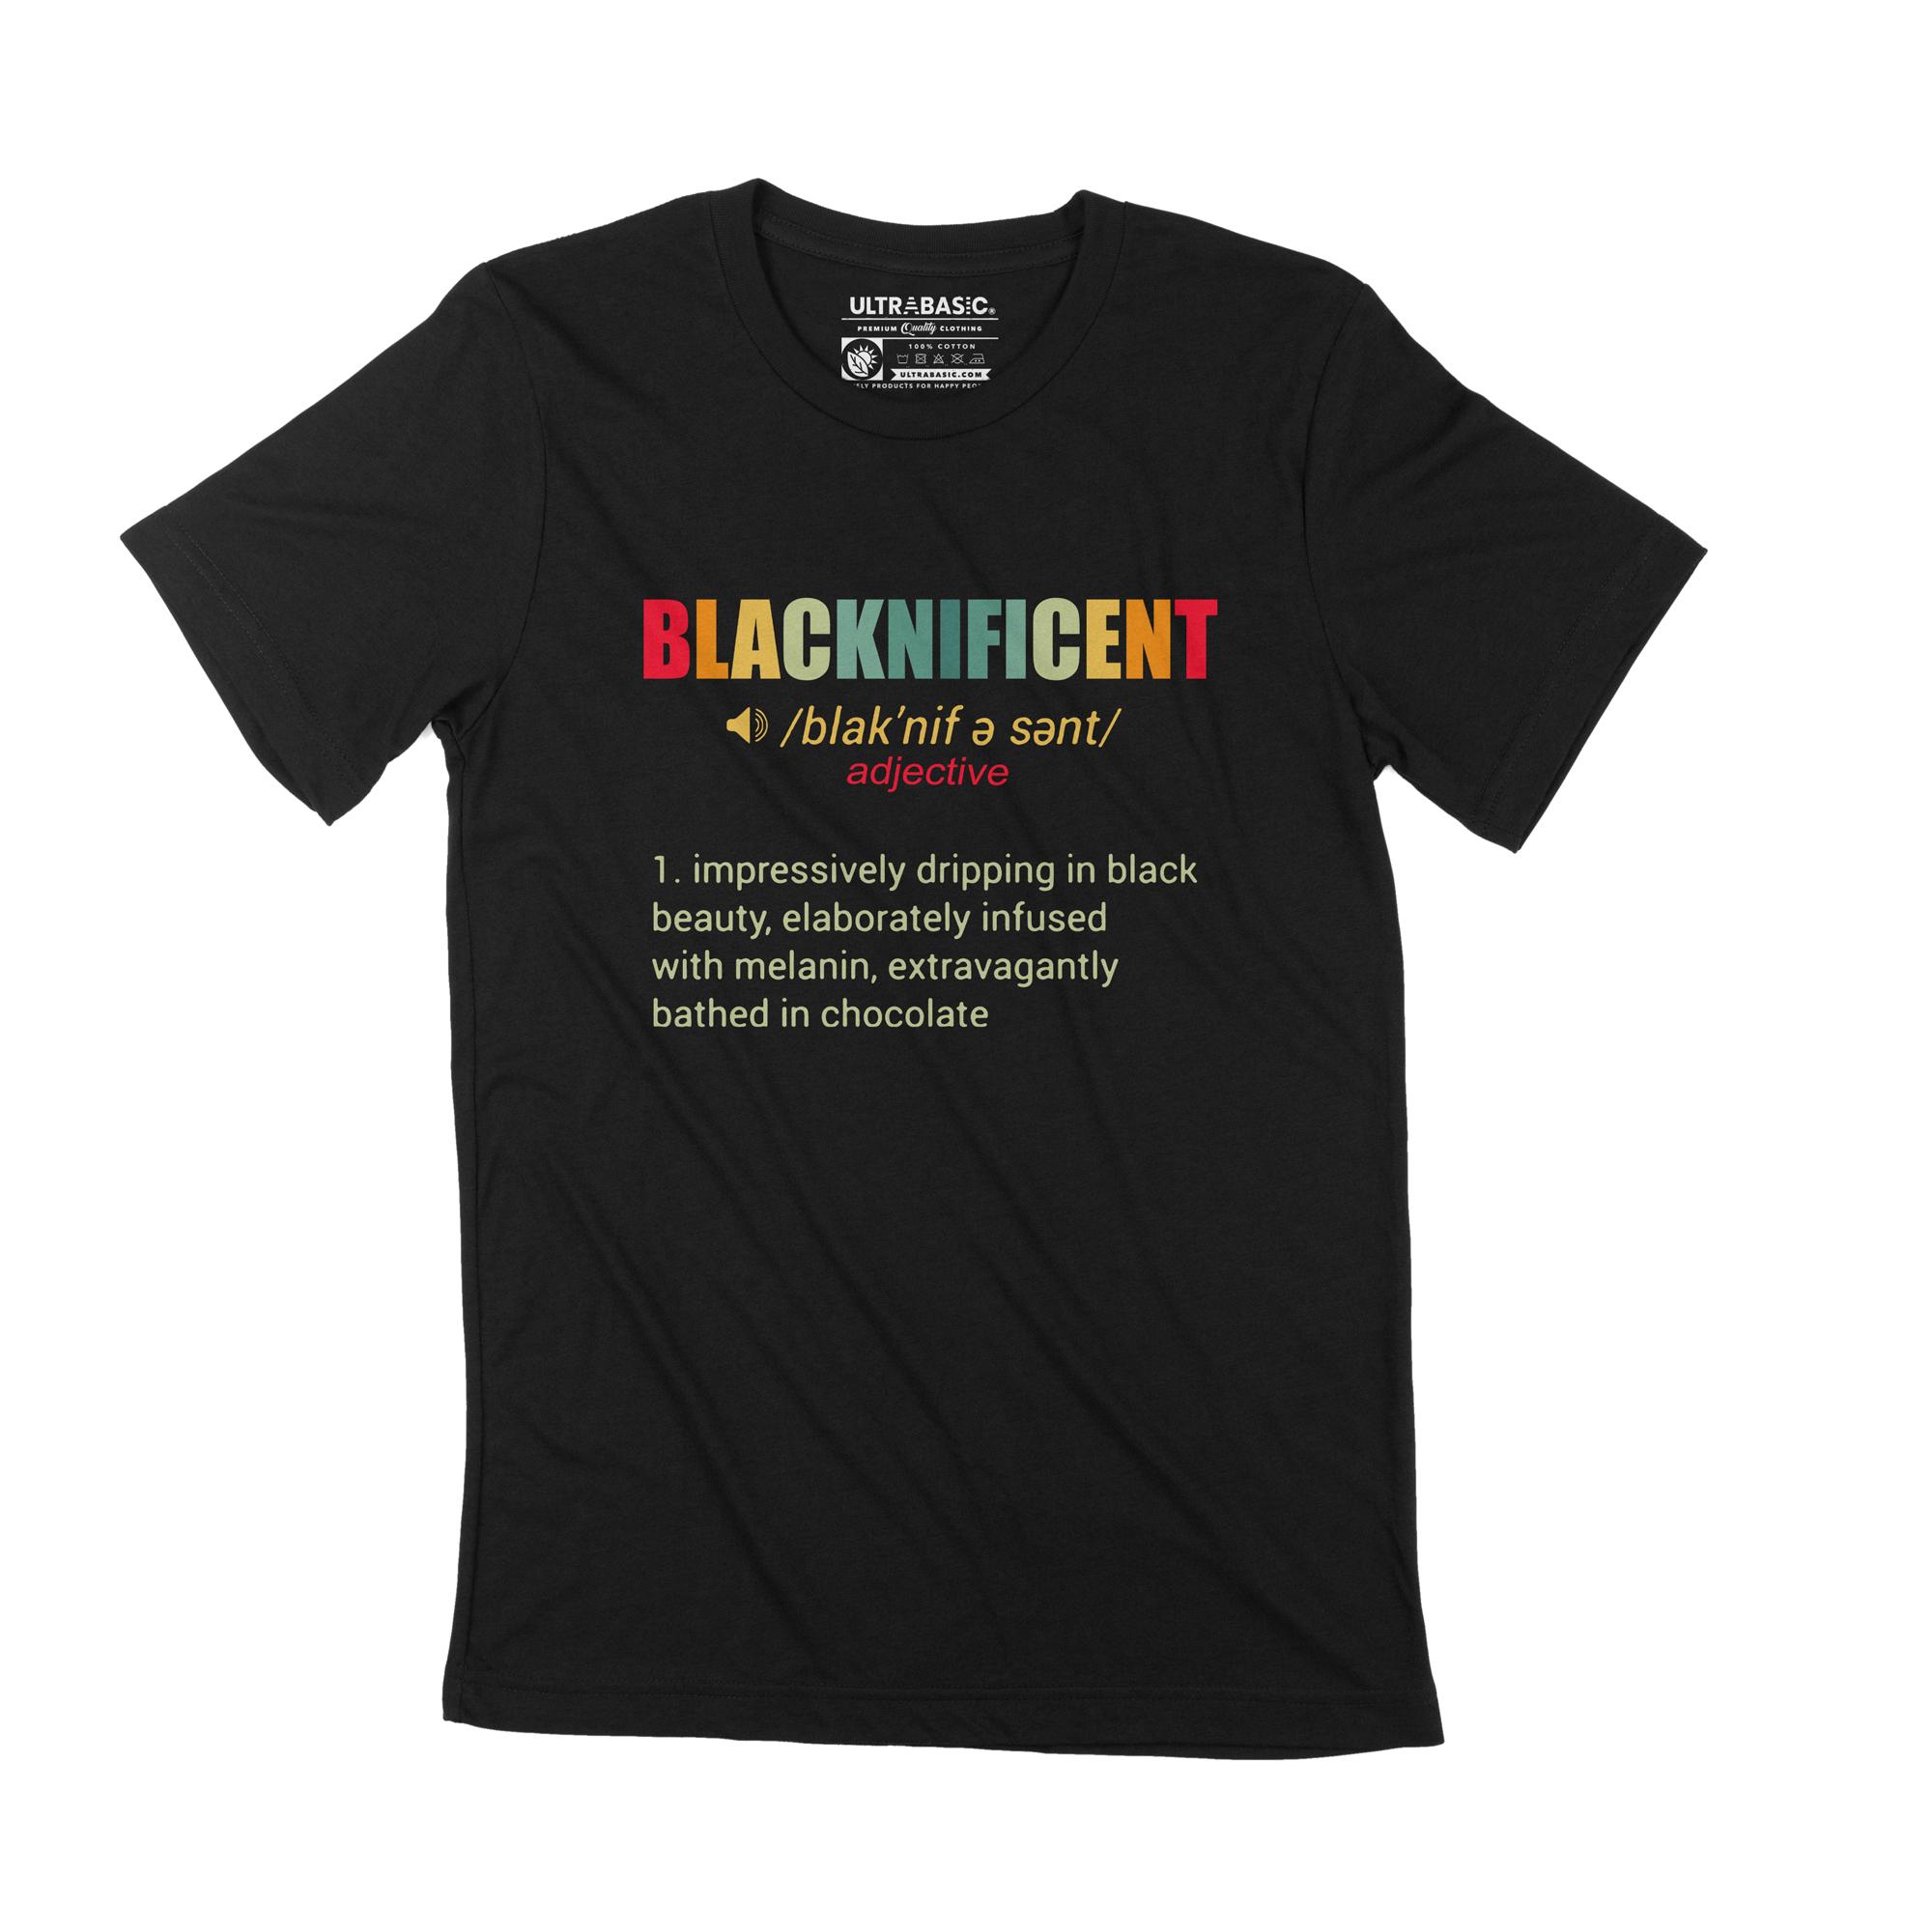 Ultrabasic Heren T-shirt Blacknificent Wees niet racistisch Black Lives Matter Gift